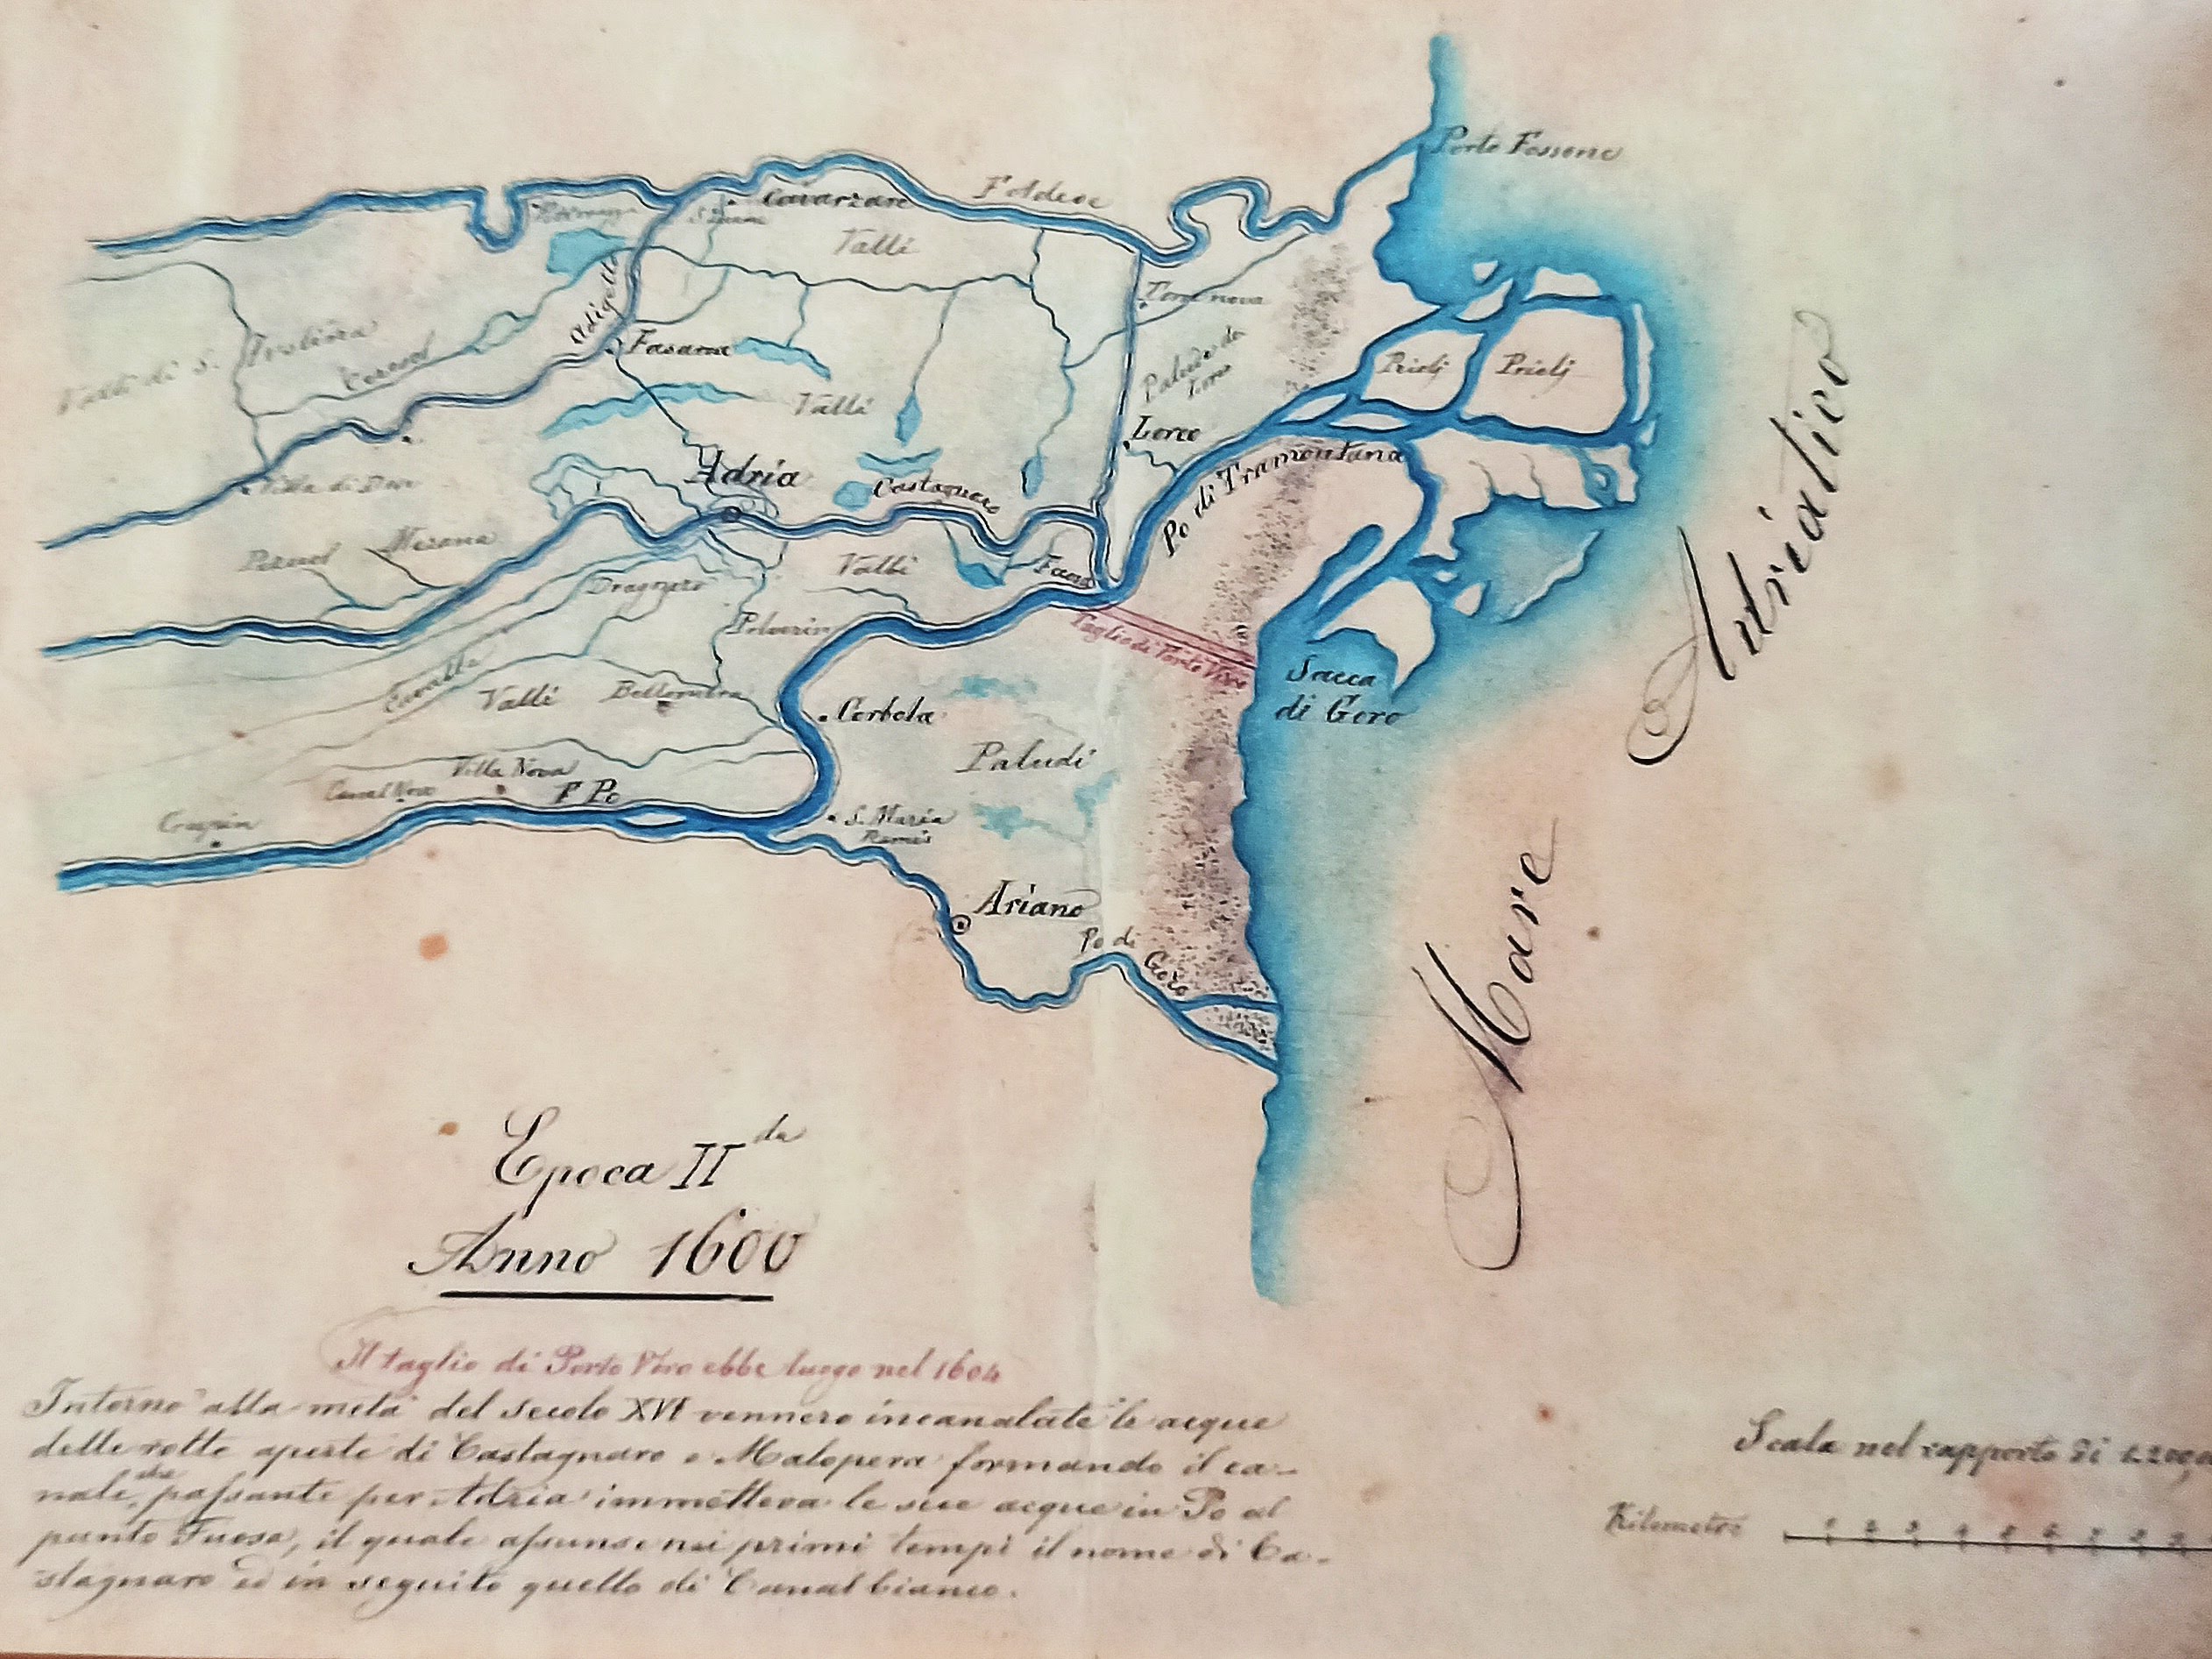 Mappa raffigurante il Taglio di Porto Viro